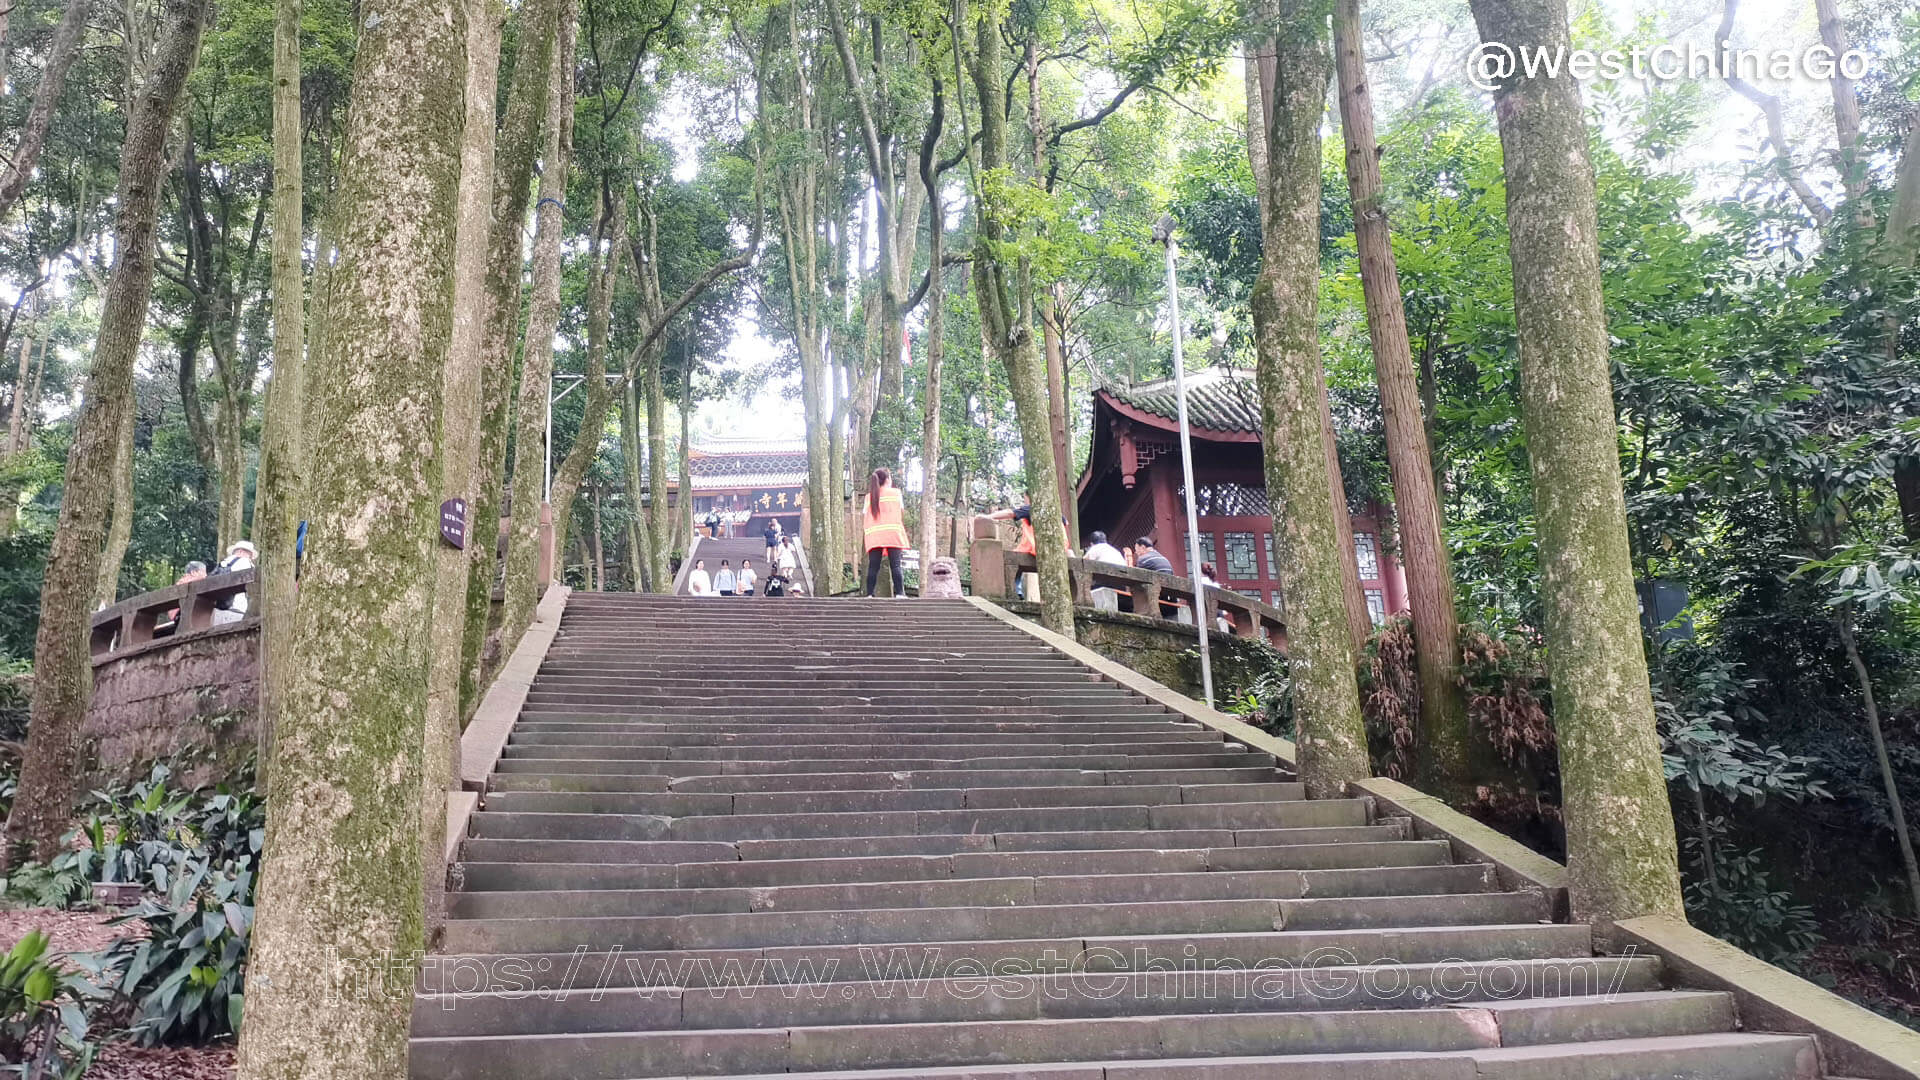 WanNian Temple,Mount Emei